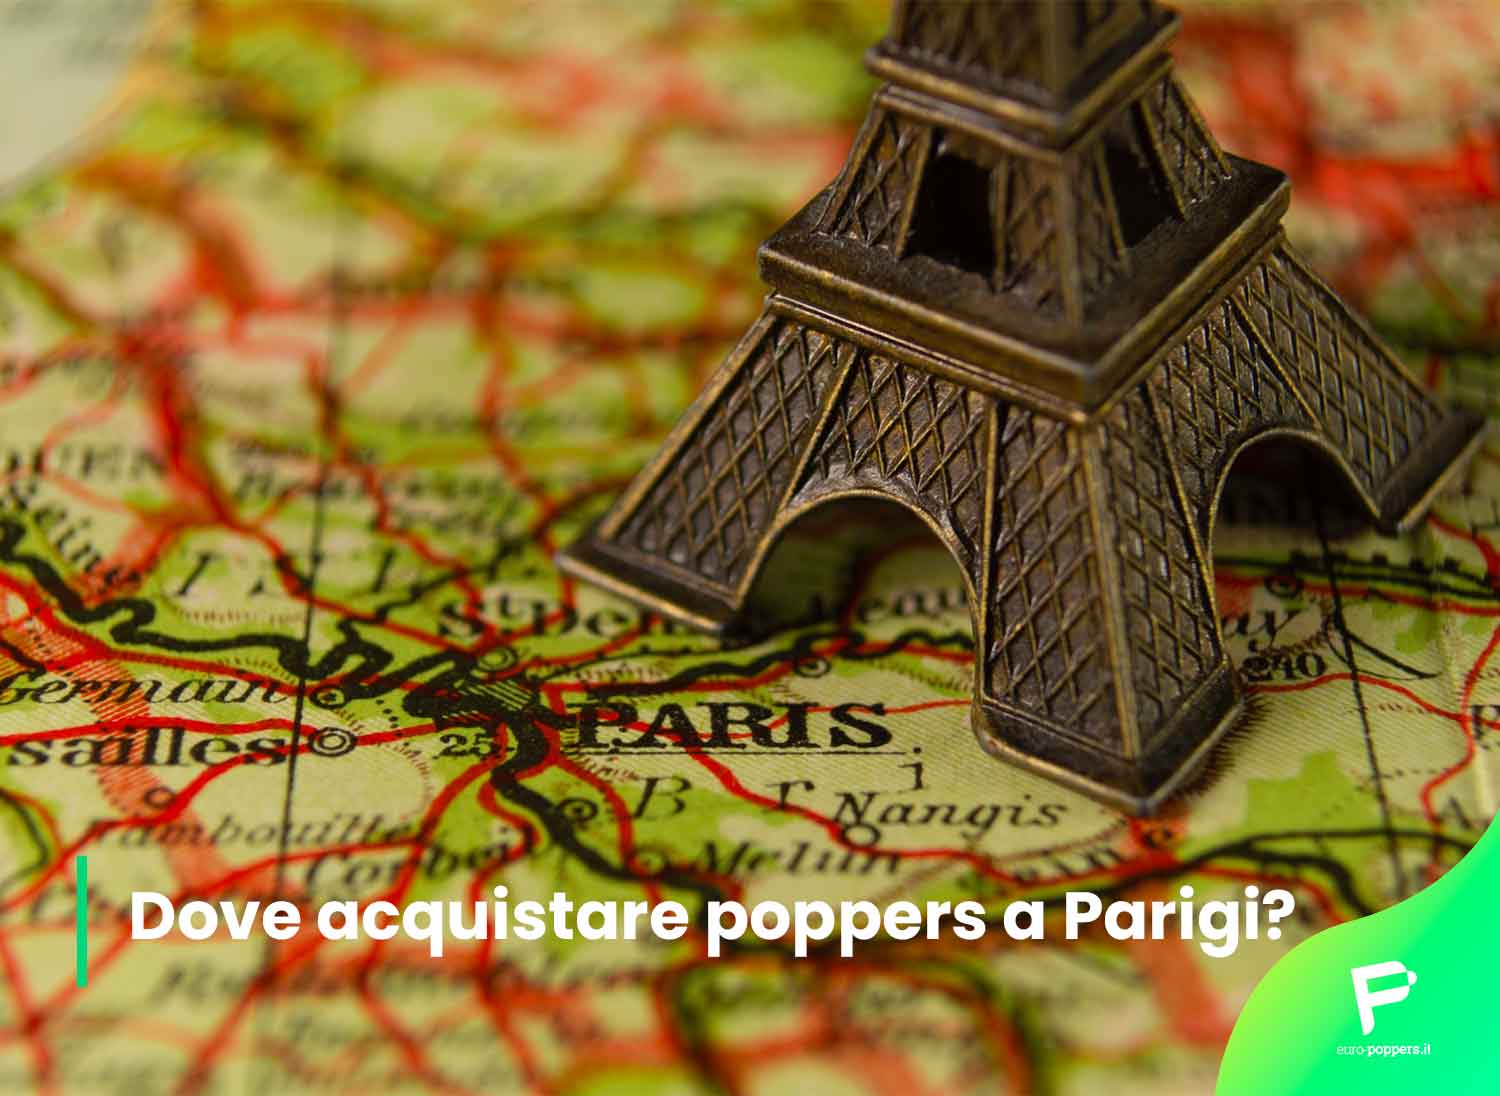 Al momento stai visualizzando Dove acquistare poppers a Parigi?